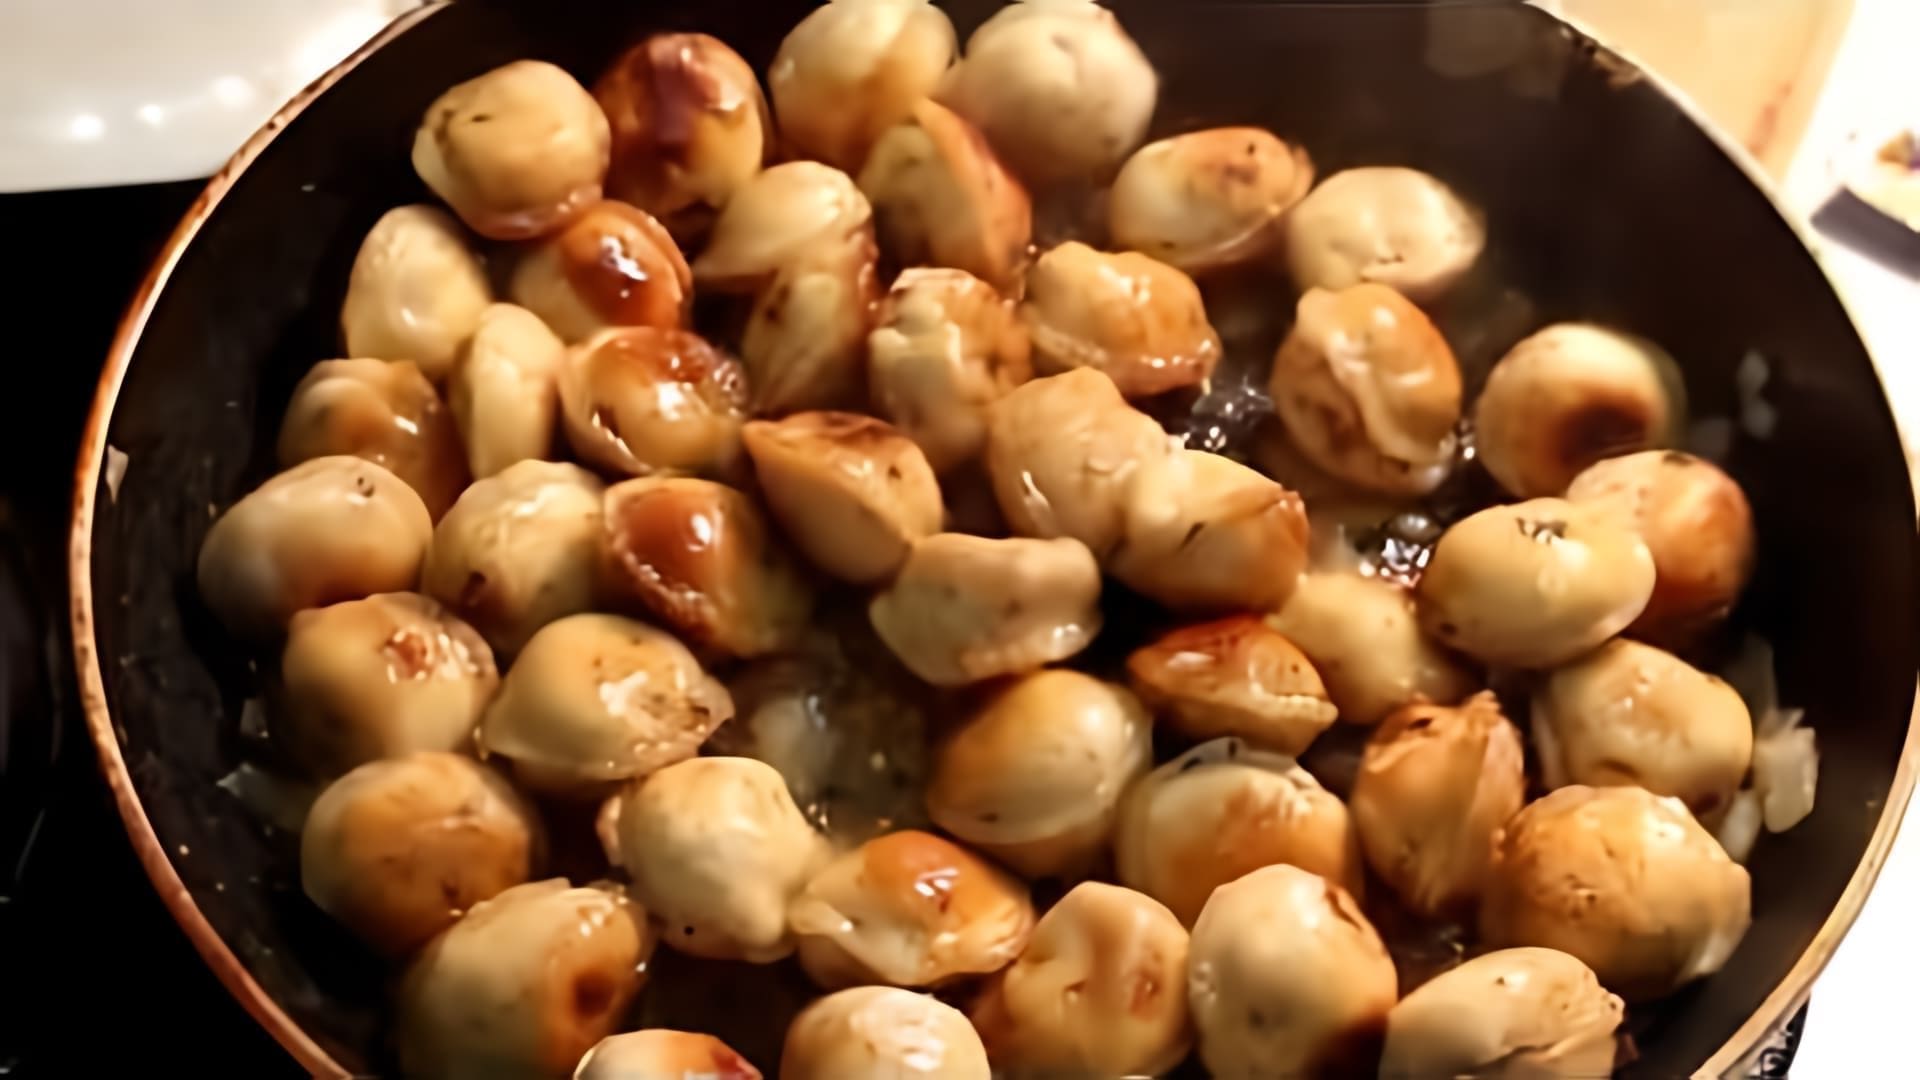 В данном видео демонстрируется процесс приготовления жареных пельменей с луком